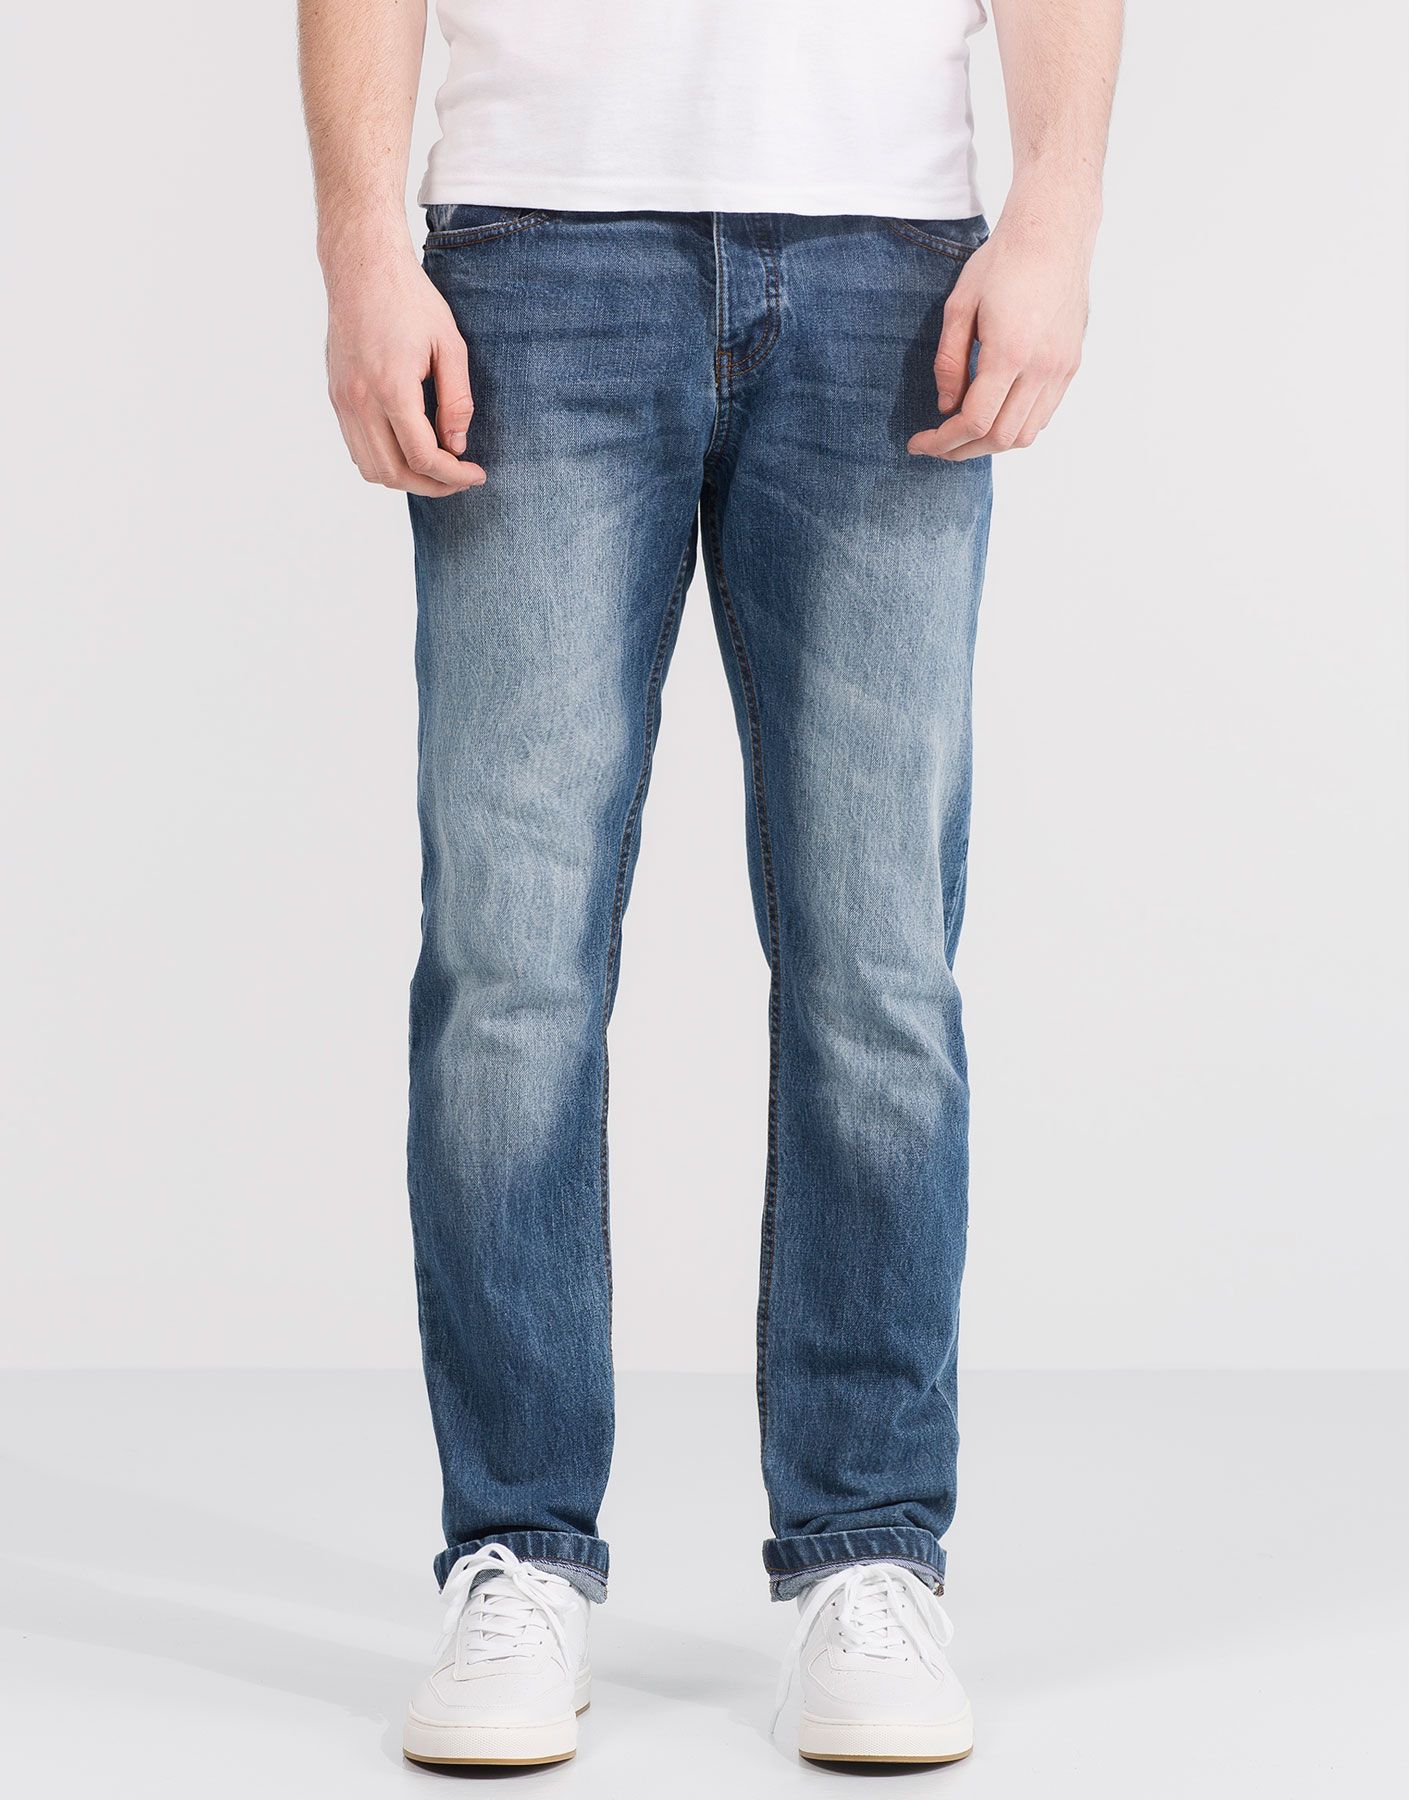 Quần jeans nam ống rộng là chiếc quần tuy mang hơi hướng cổ điển nhưng chưa bao giờ lỗi mốt.